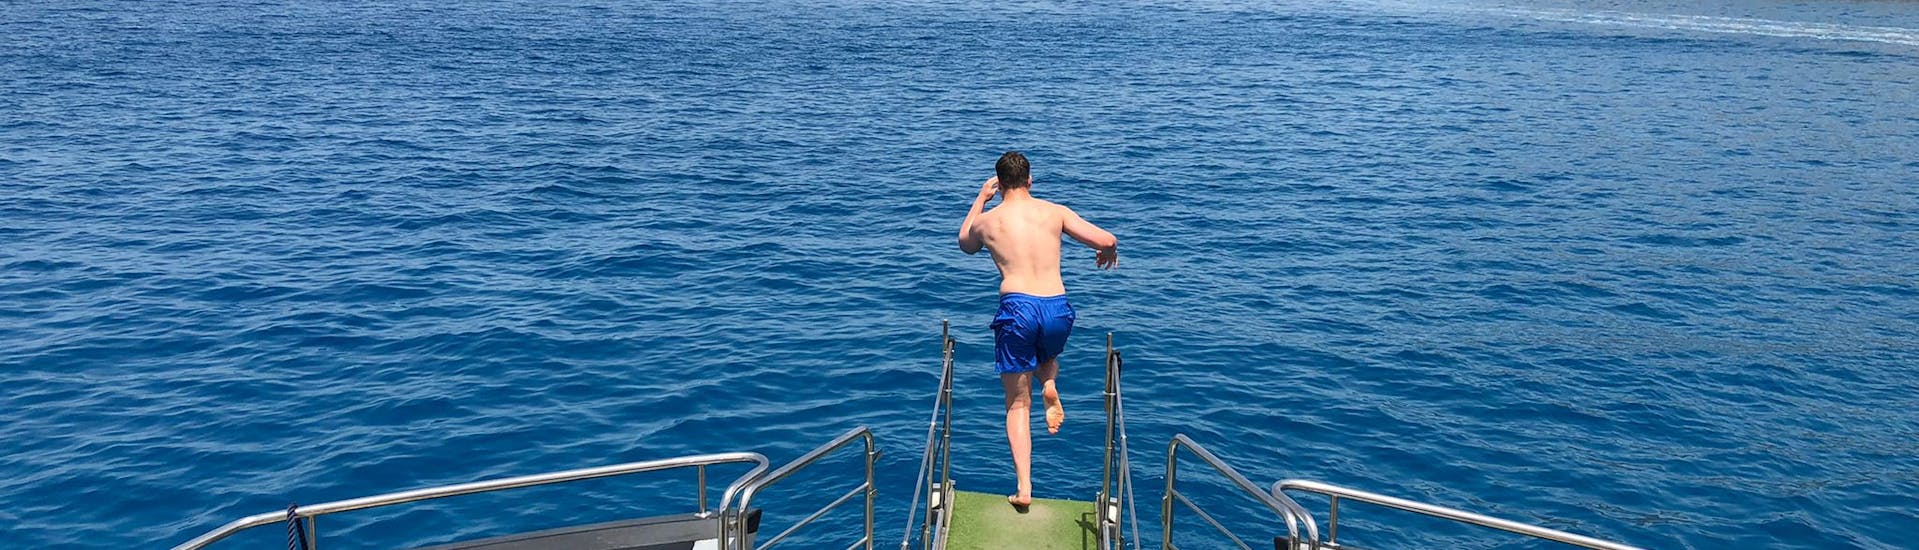 Ein Mann springt ins Wasser während der Katamaran-Tour rund um Ibiza mit Wassersport und Paella.